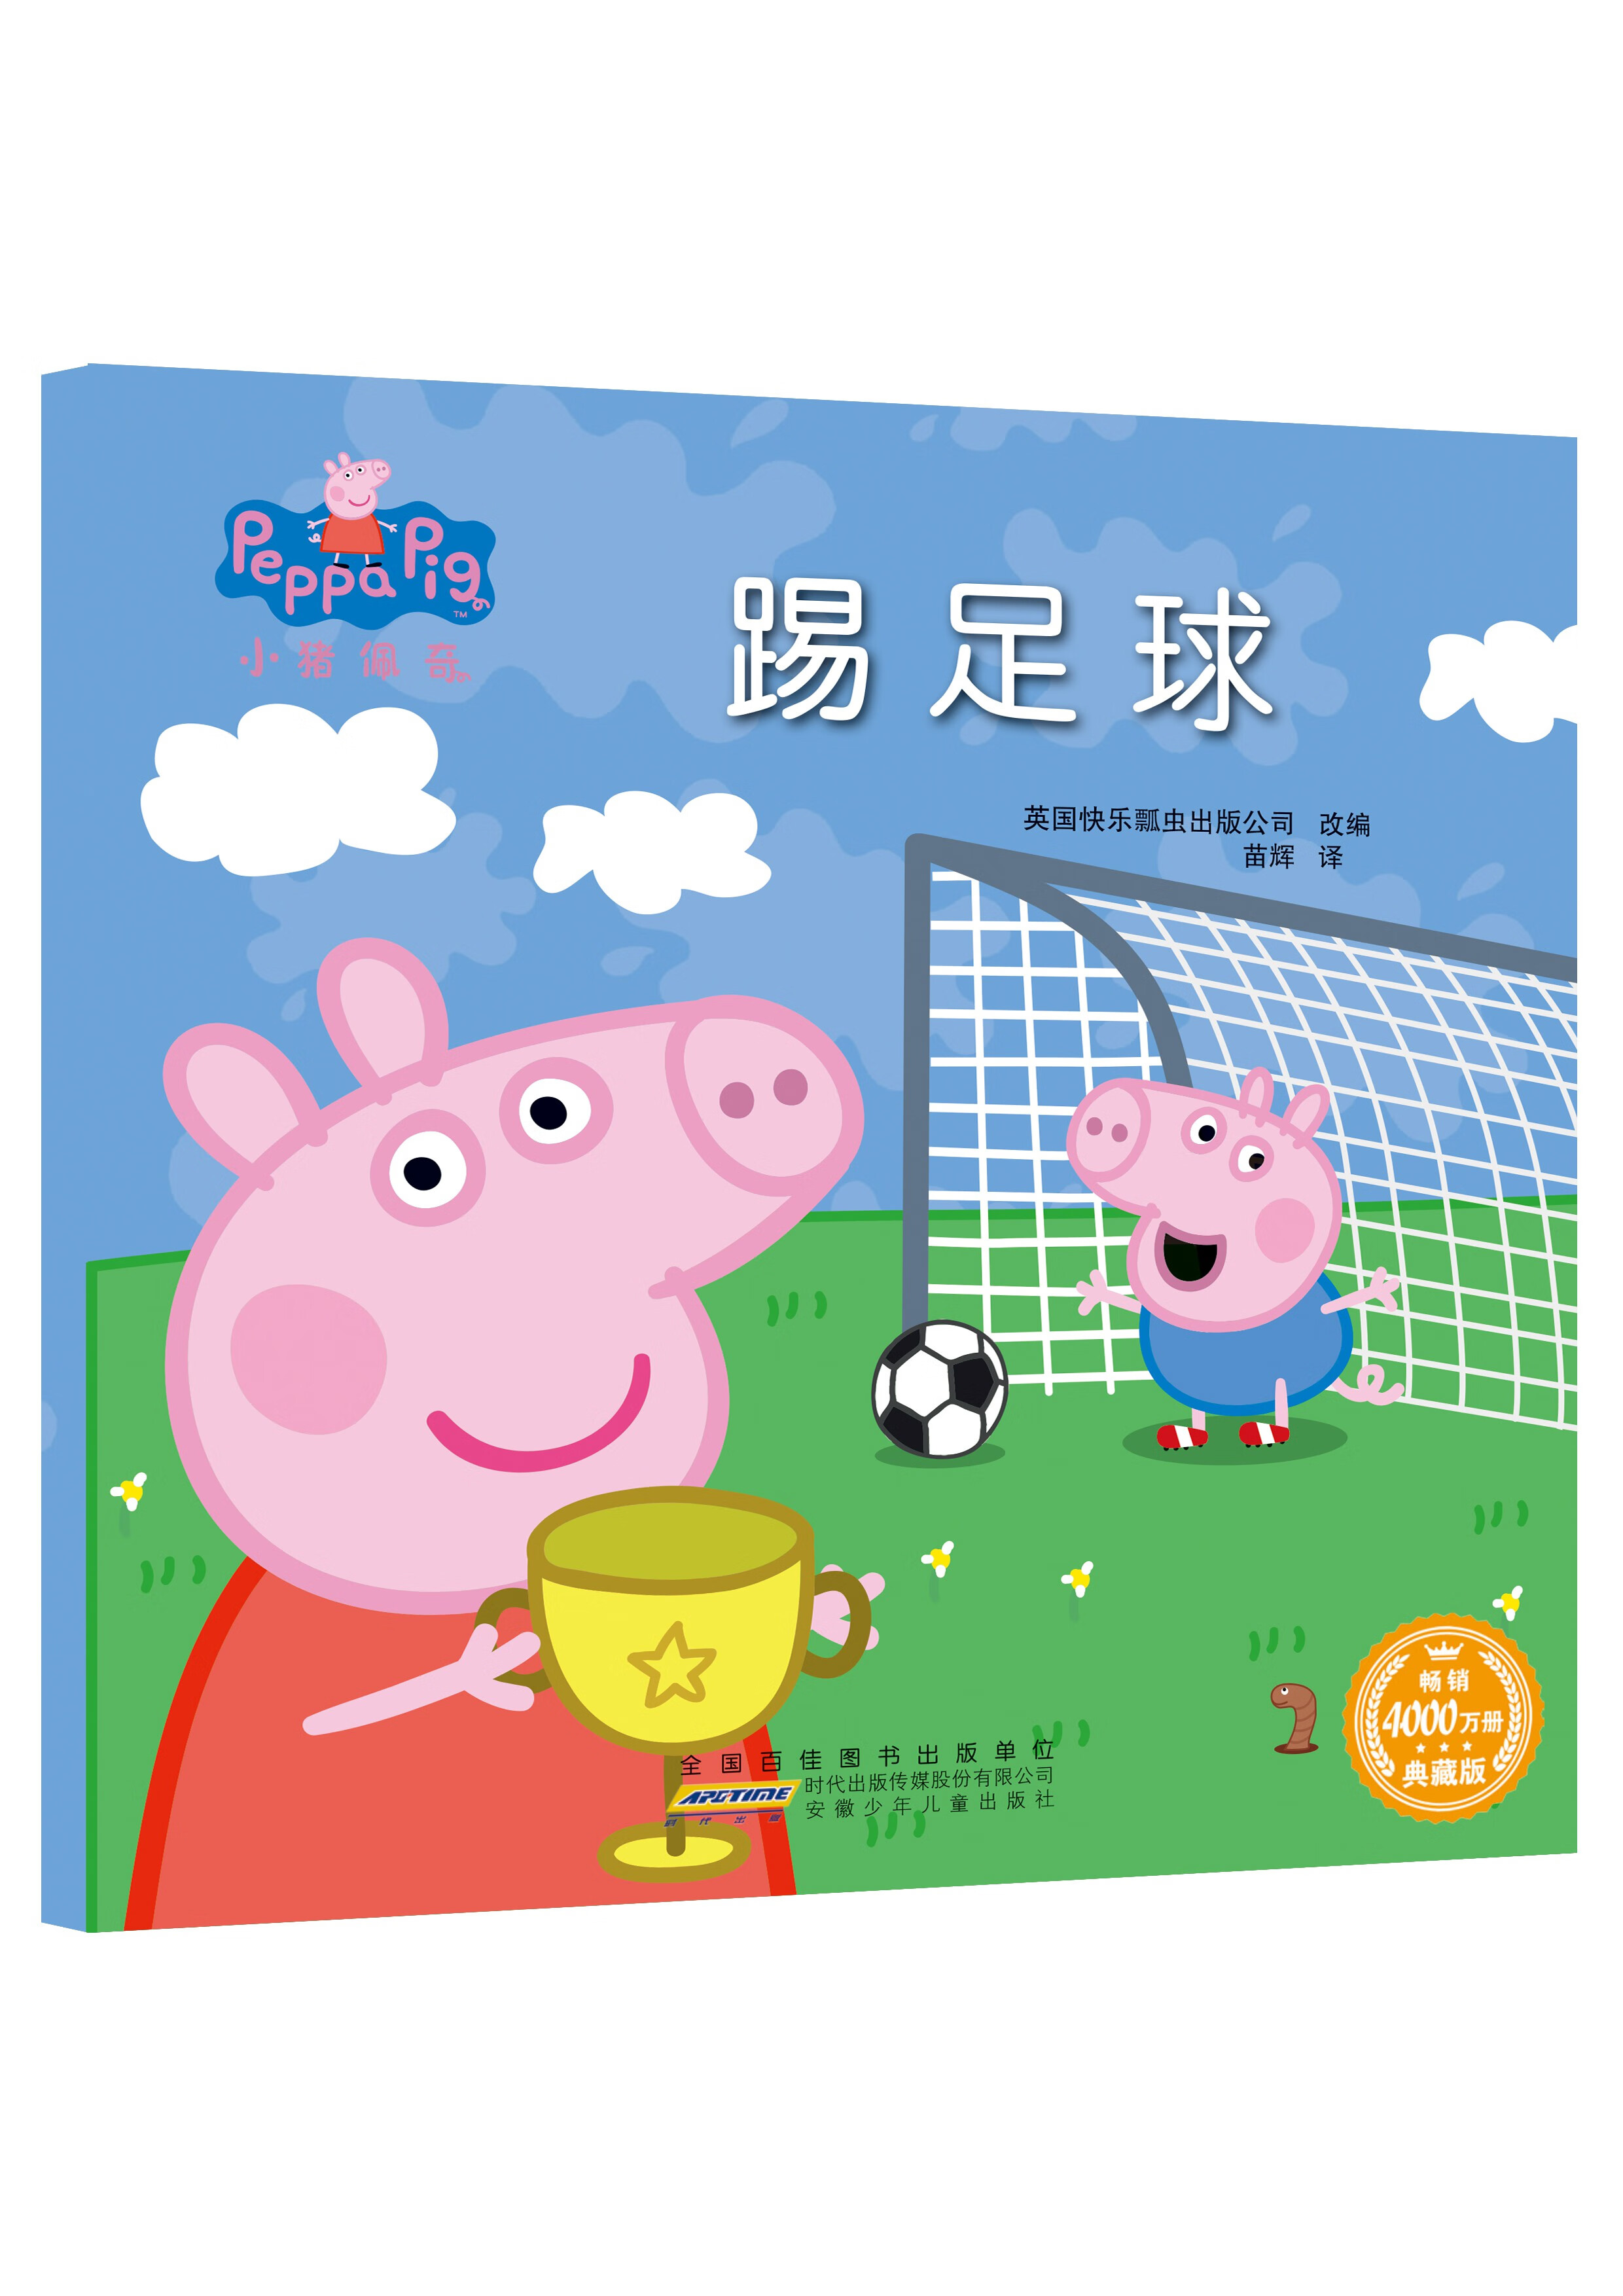 新华书店官方正版有声读物熊猫日记 踢足球 5.87元